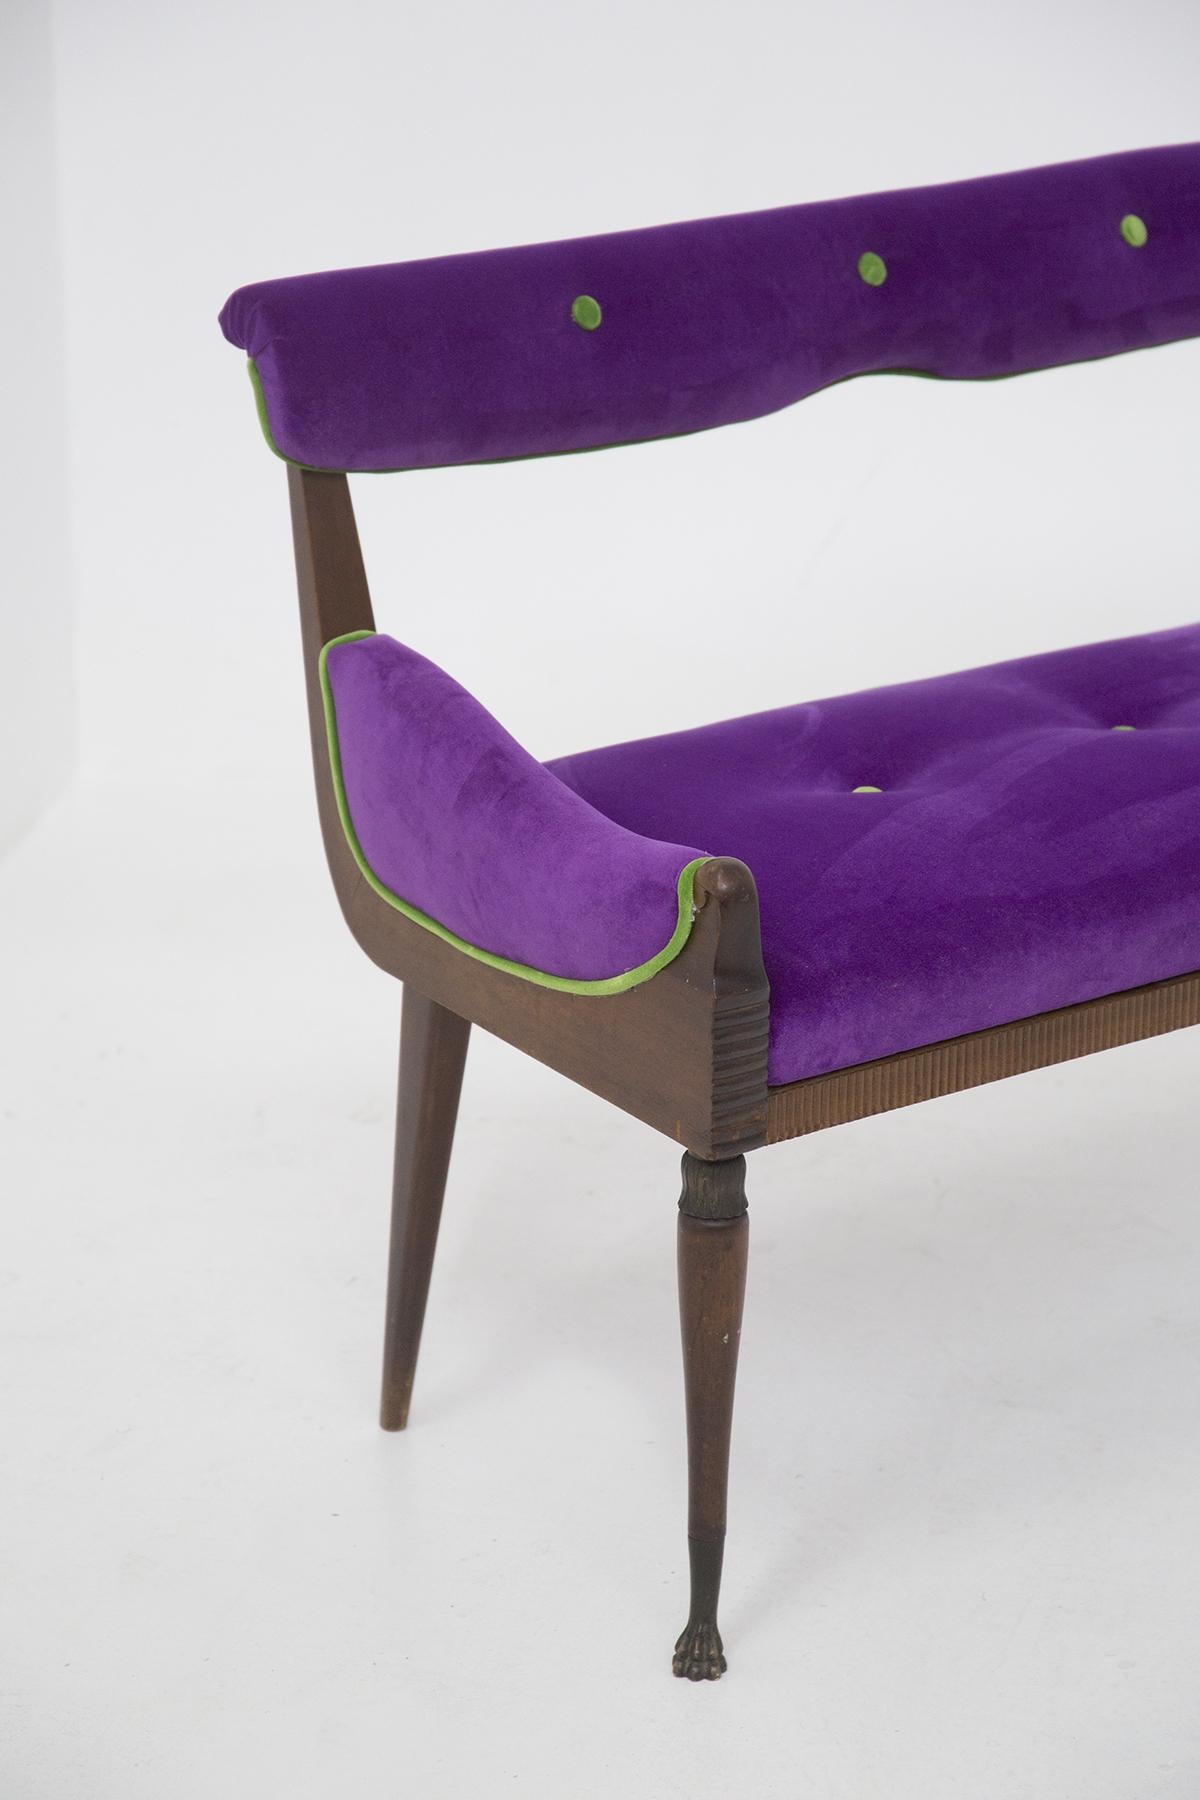 Wunderschöner Vintage-Sessel aus Holz und Samt, entworfen in den 1950er Jahren, hergestellt in Italien.
Die Bank hat ein Holzgestell mit 4 Beinen, die in gedrechselten, leicht gebogenen Messingfüßen enden. Die beiden Armlehnen sind maschinell